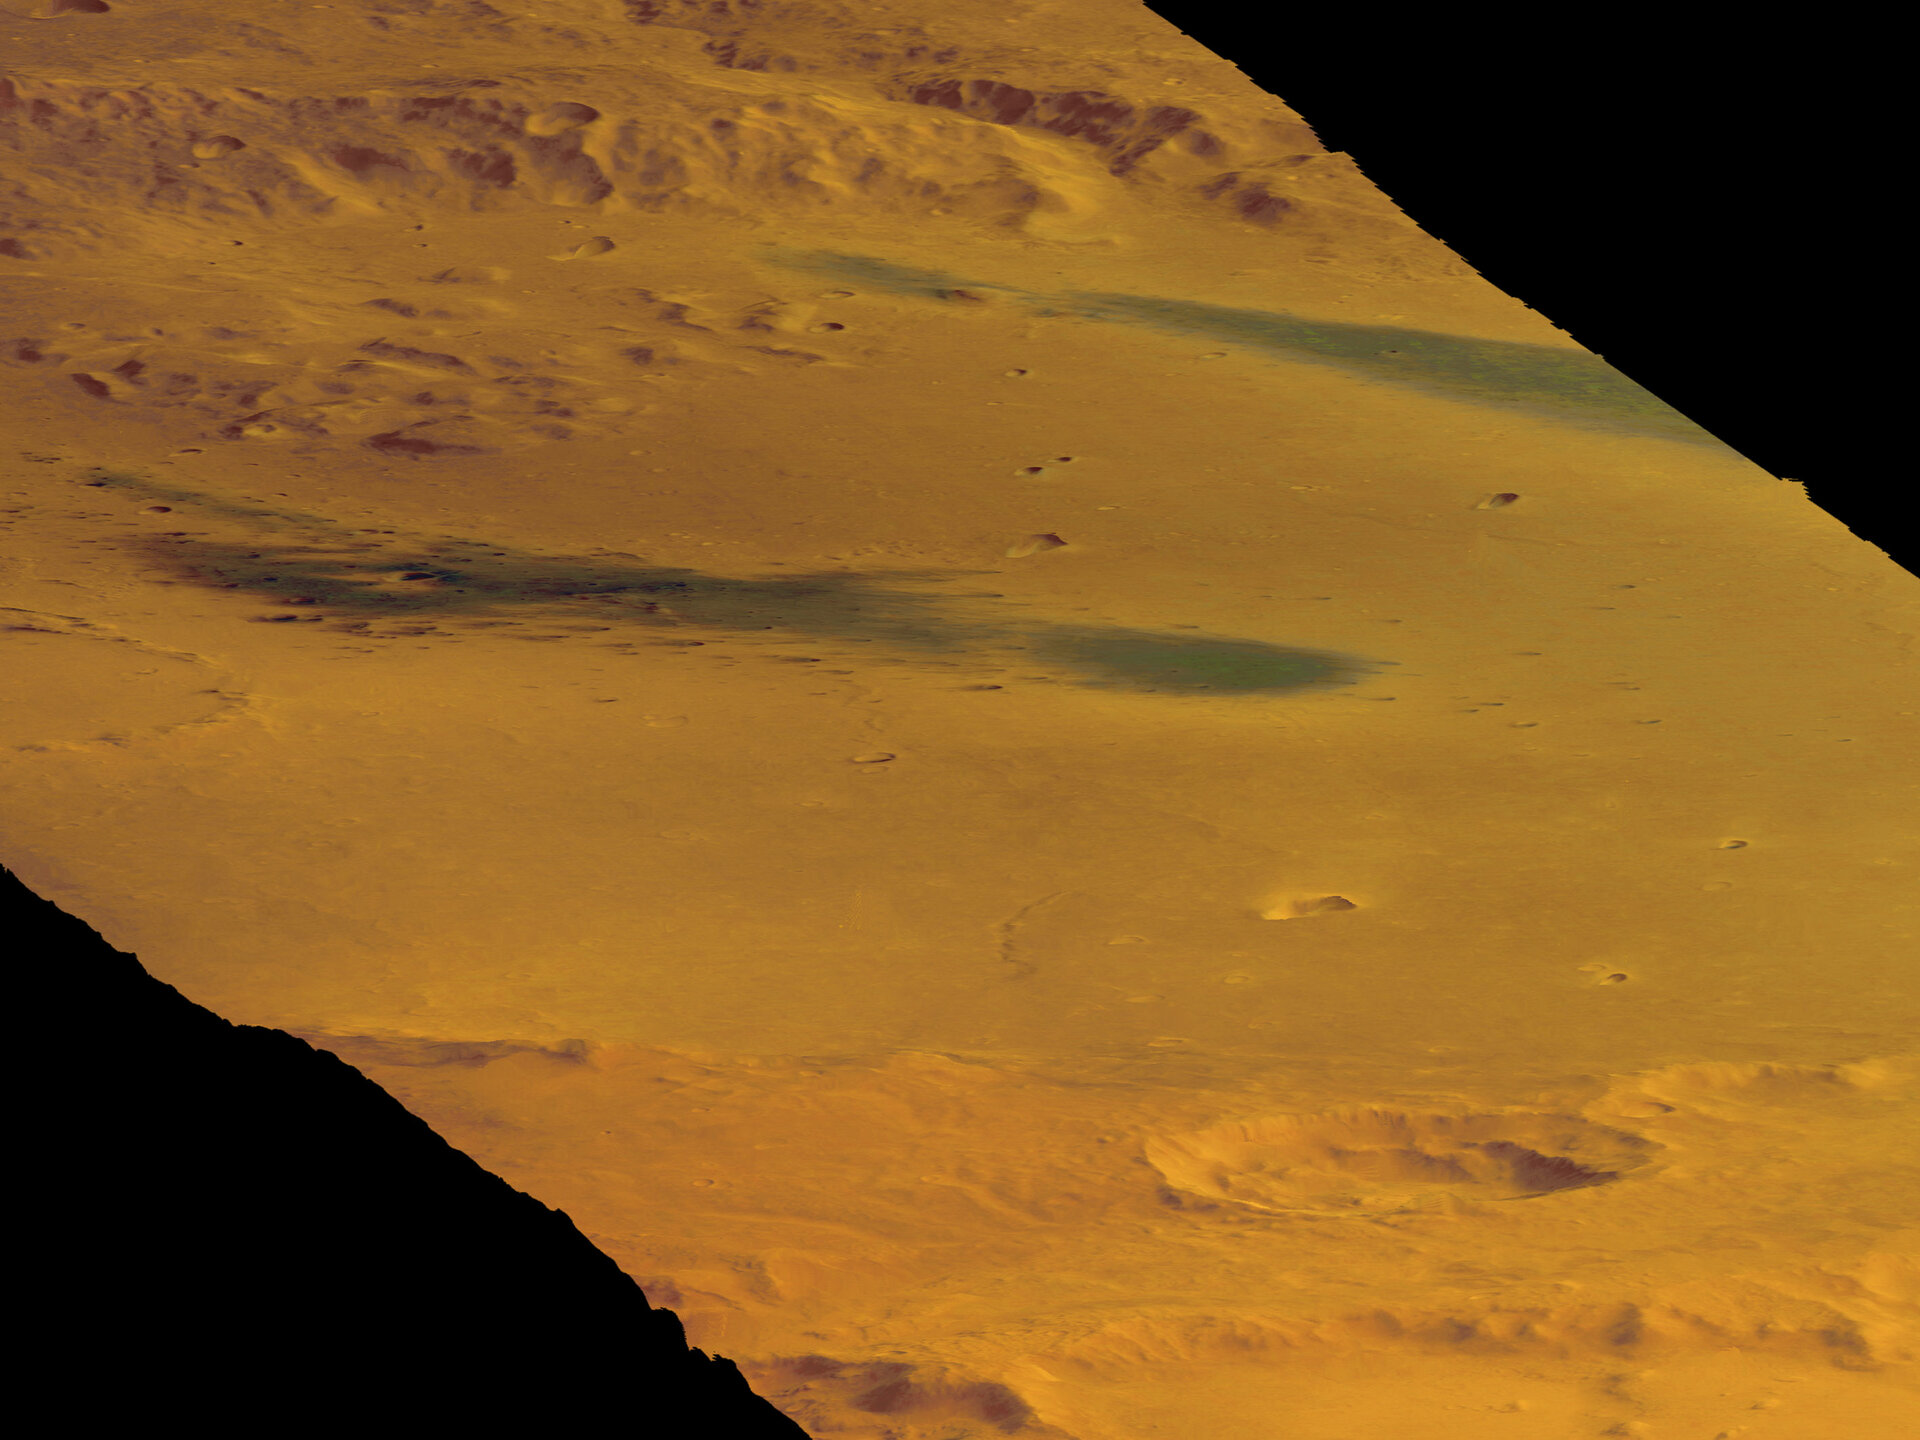 Spirit landete fast genau in der Mitte dieses Bildes, aufgenommen durch die Mars Express HRSC-Kamera